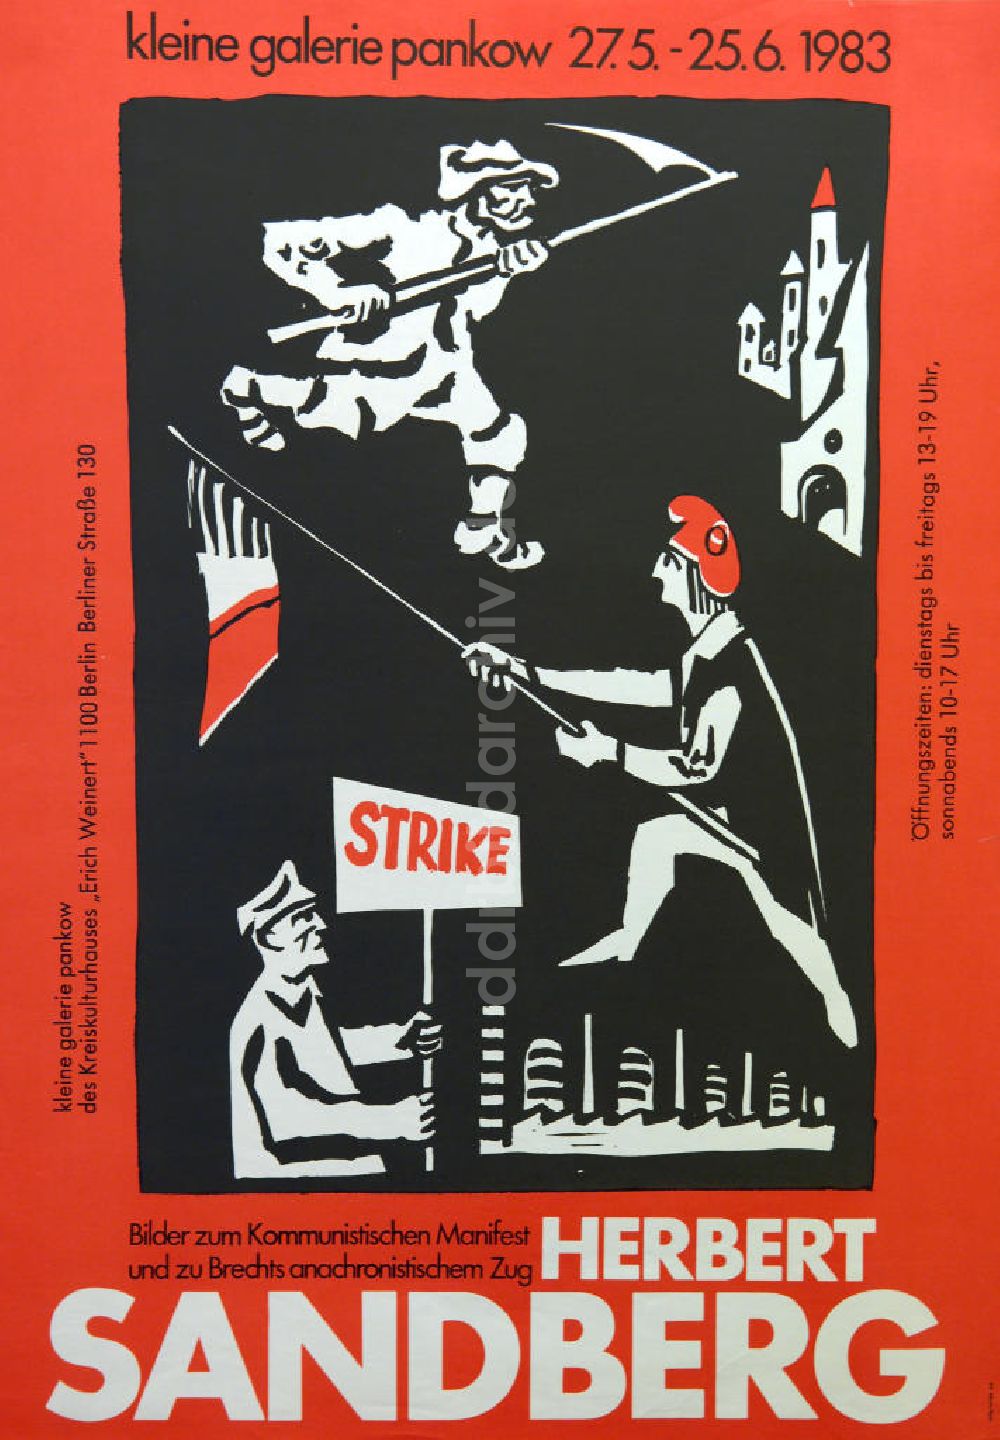 DDR-Bildarchiv: Berlin - Plakat von der Ausstellung Herbert Sandberg, Bilder zum kommunistischen Manifest und zu Brechts anachronistischen Zug aus dem Jahr 1983